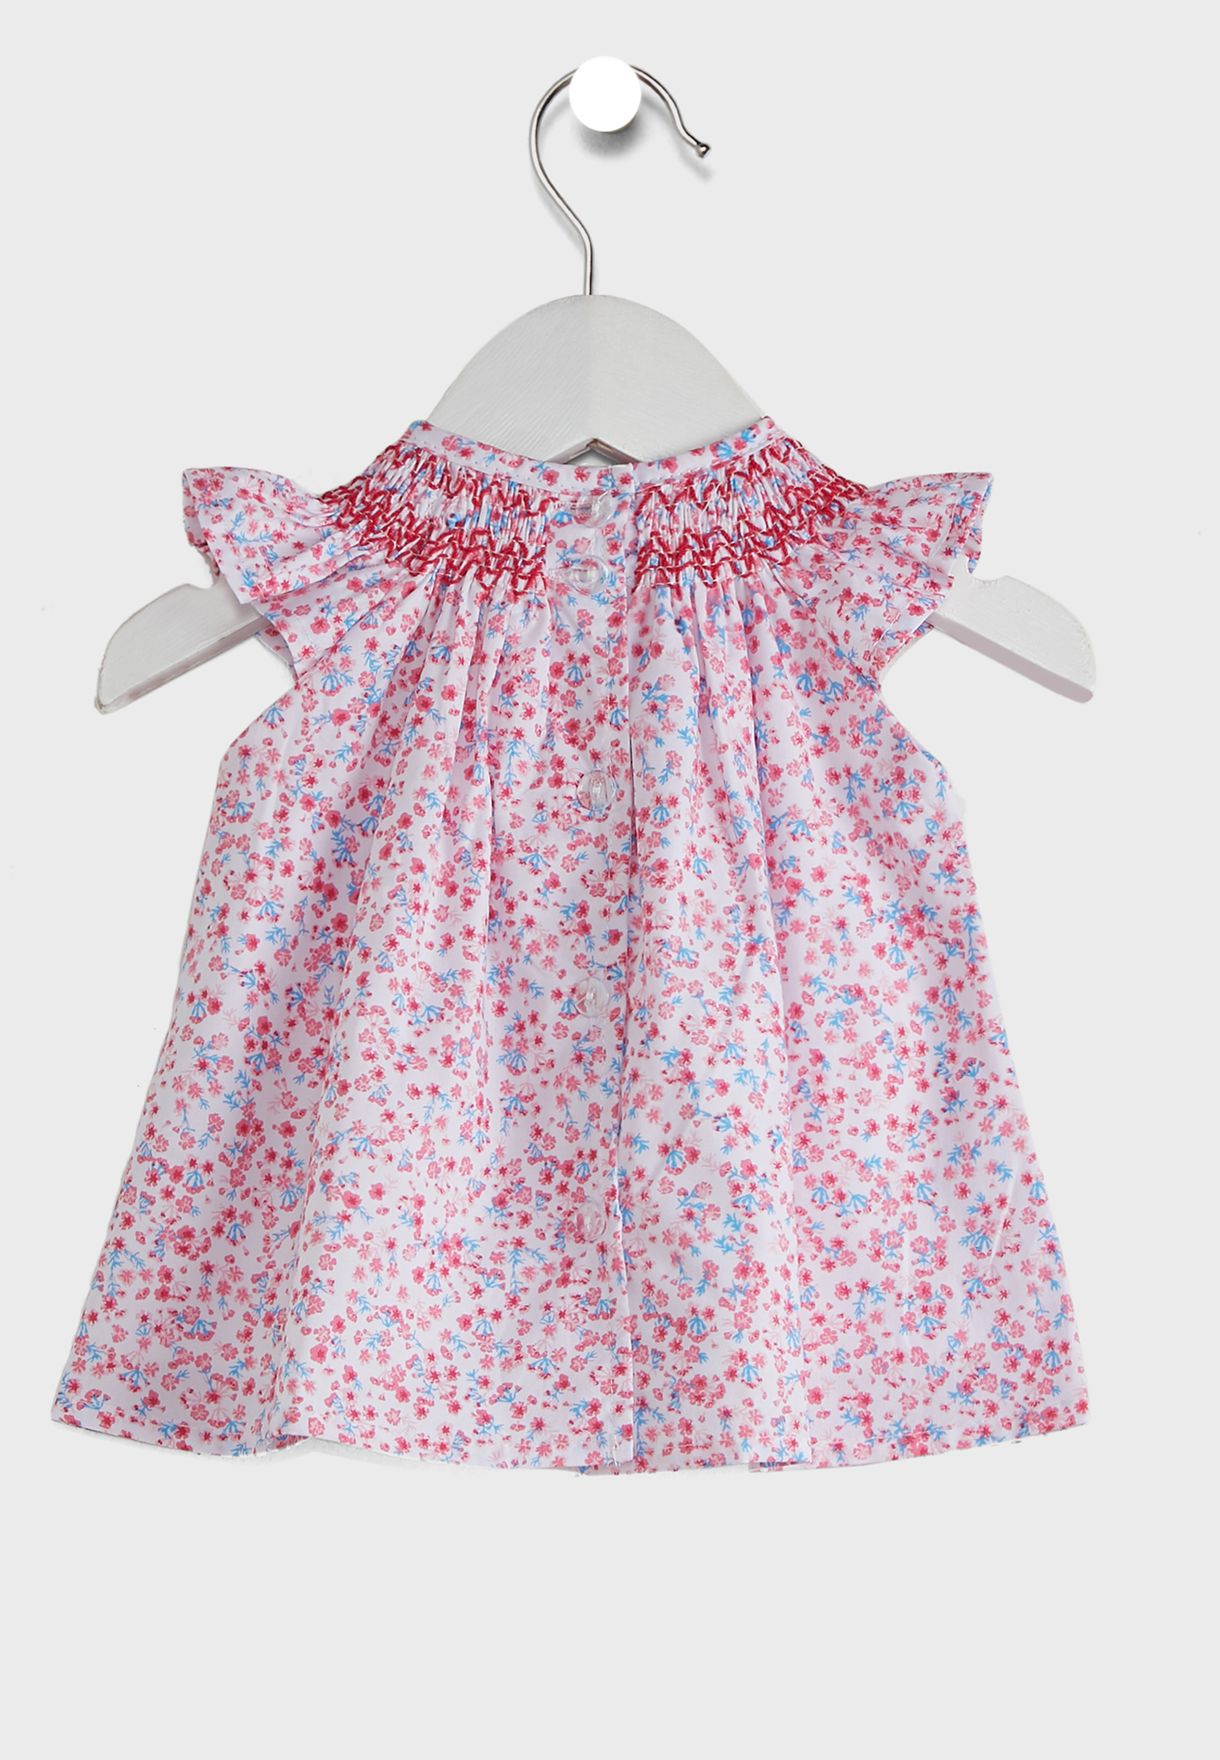 Infant Floral Dress + Knicker Set